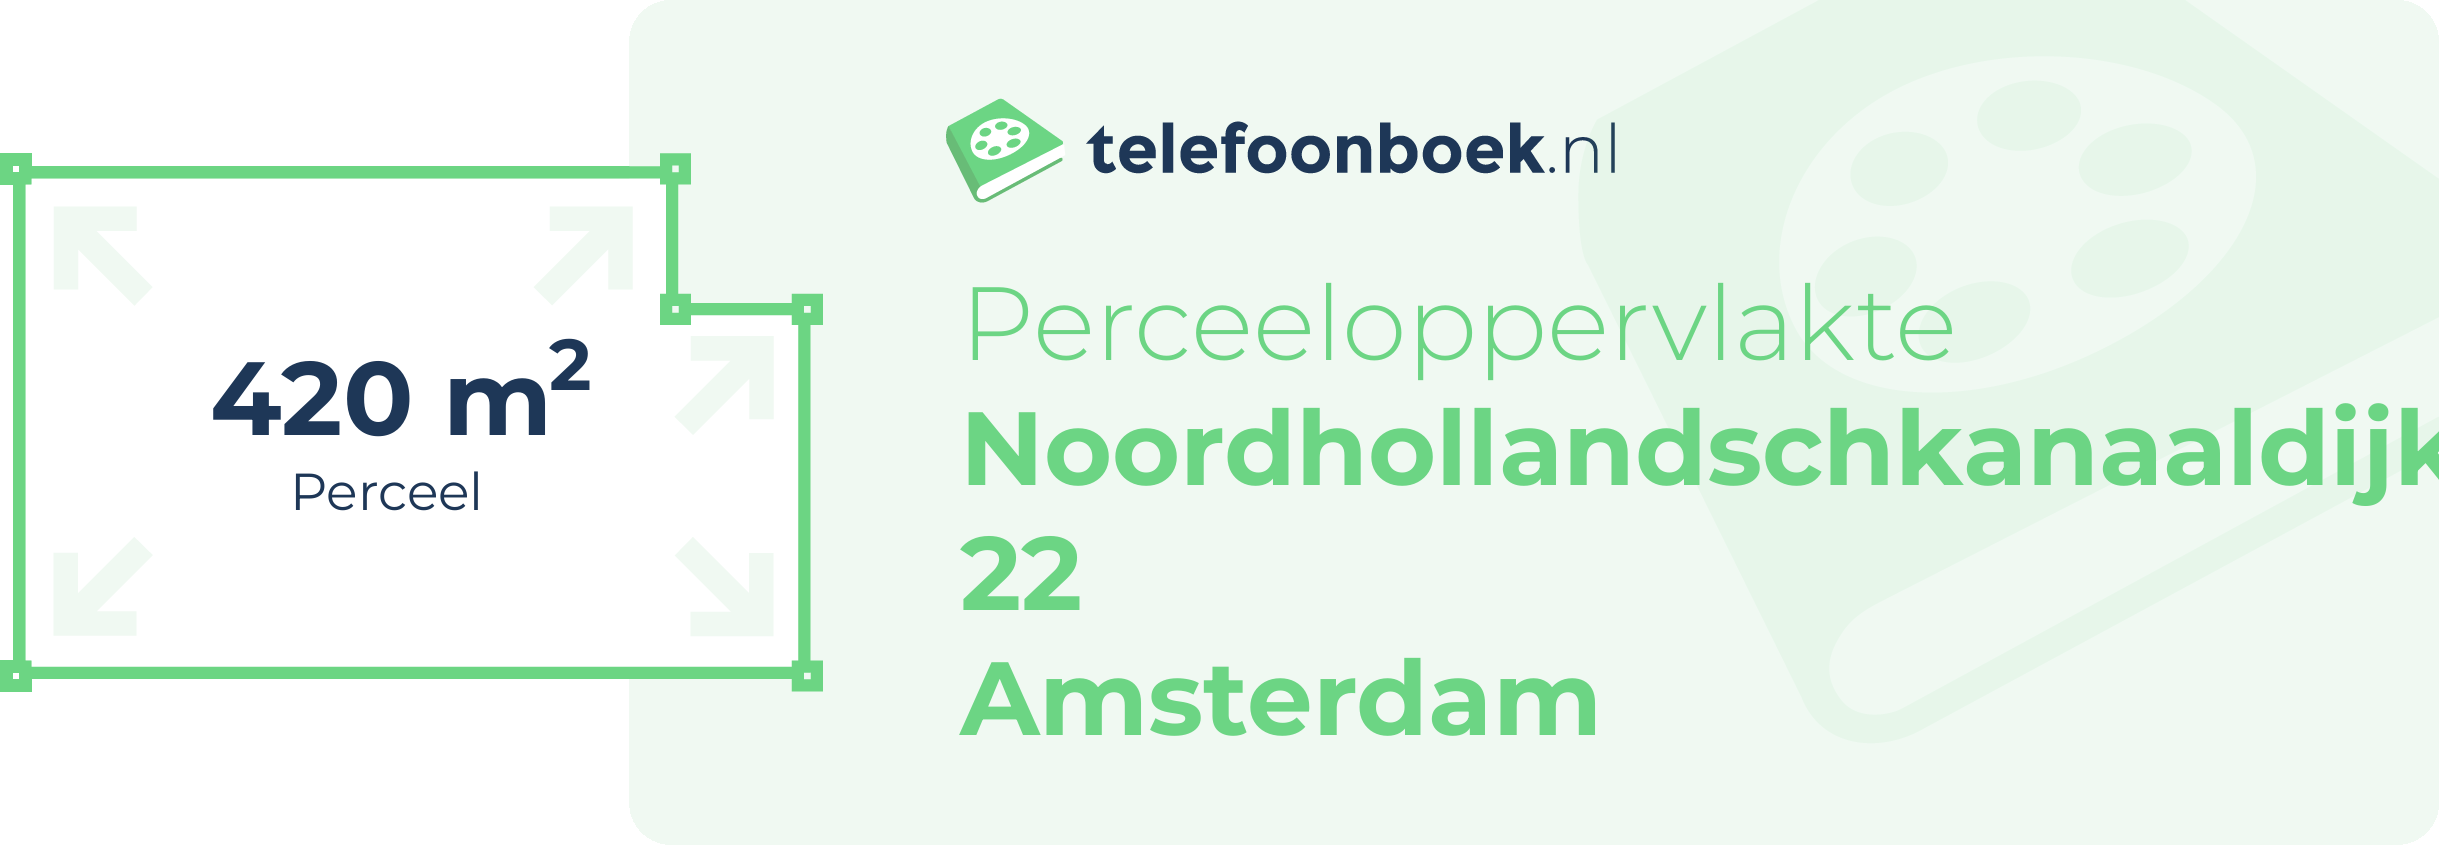 Perceeloppervlakte Noordhollandschkanaaldijk 22 Amsterdam